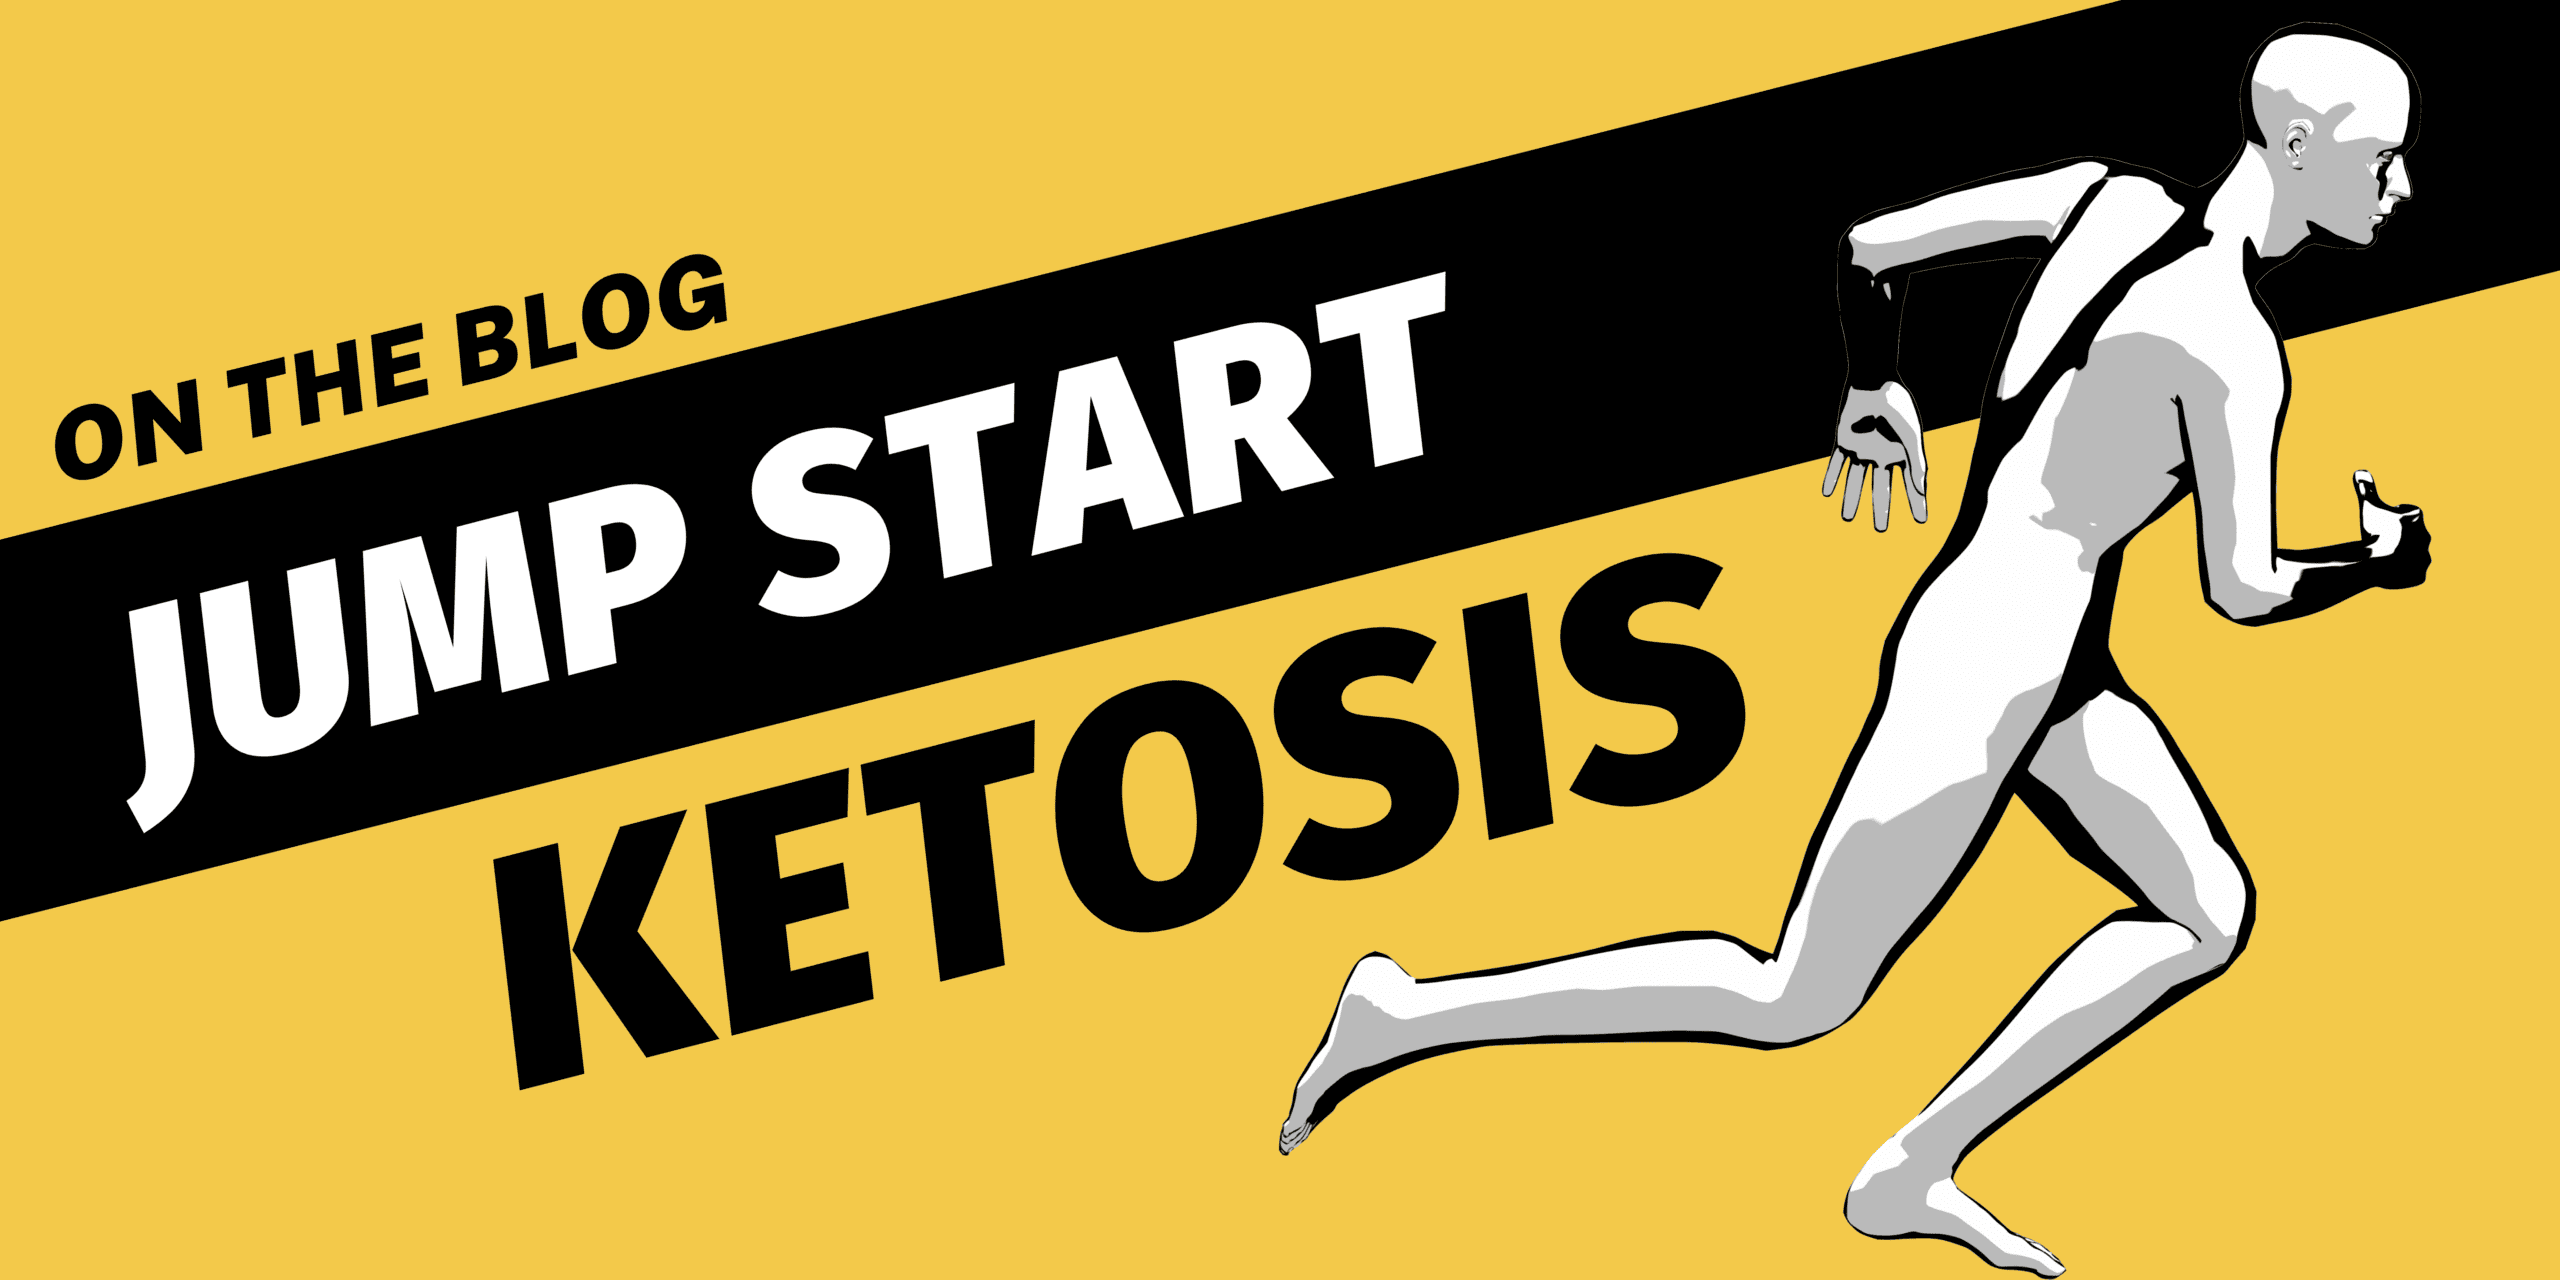 jump start ketosis